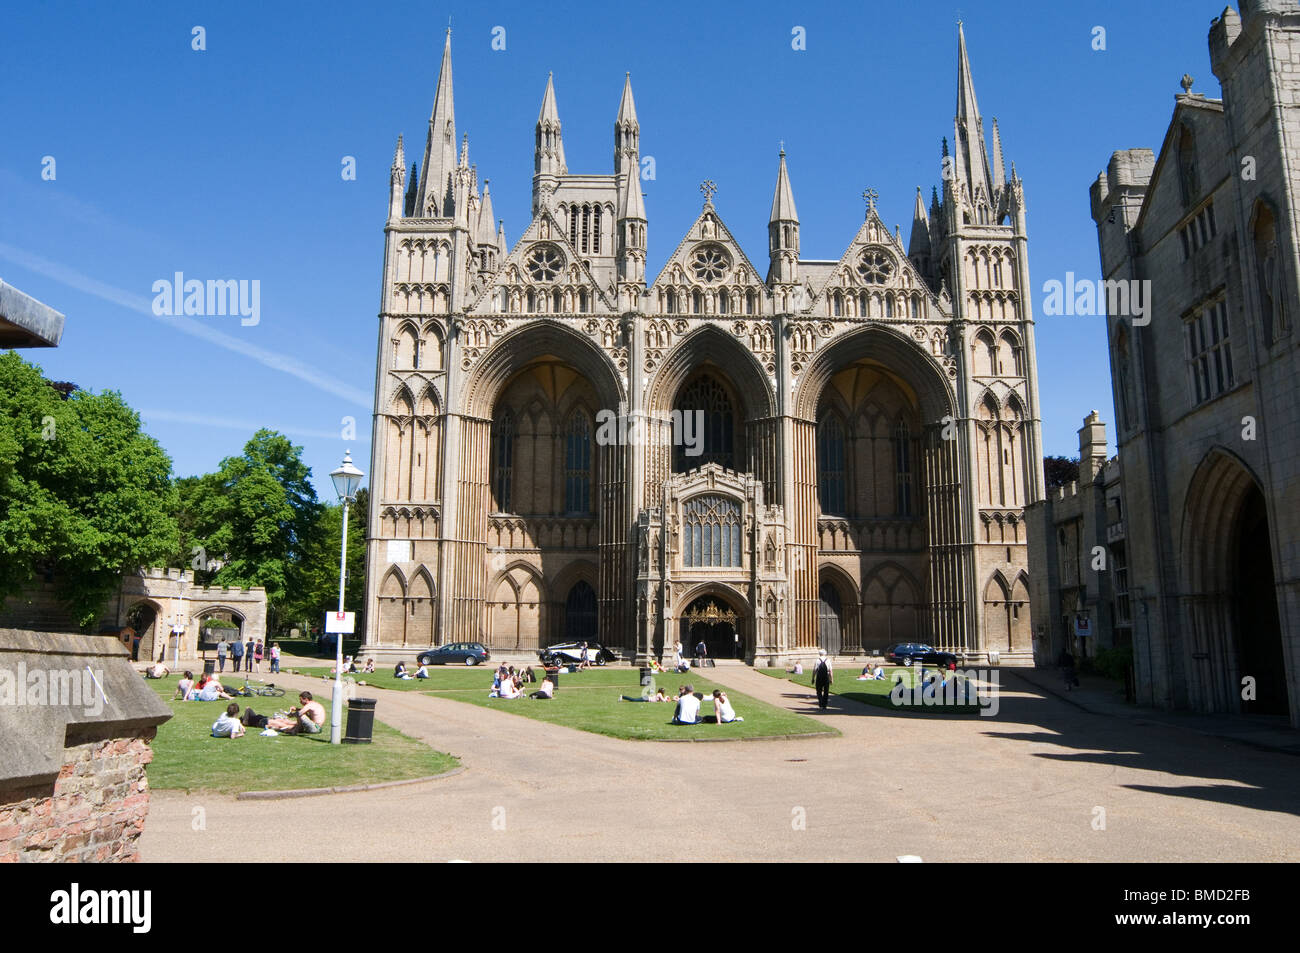 La catedral de Peterborough lugar de culto religioso religión uk fachada ornamentada arquitectura de elevación Foto de stock